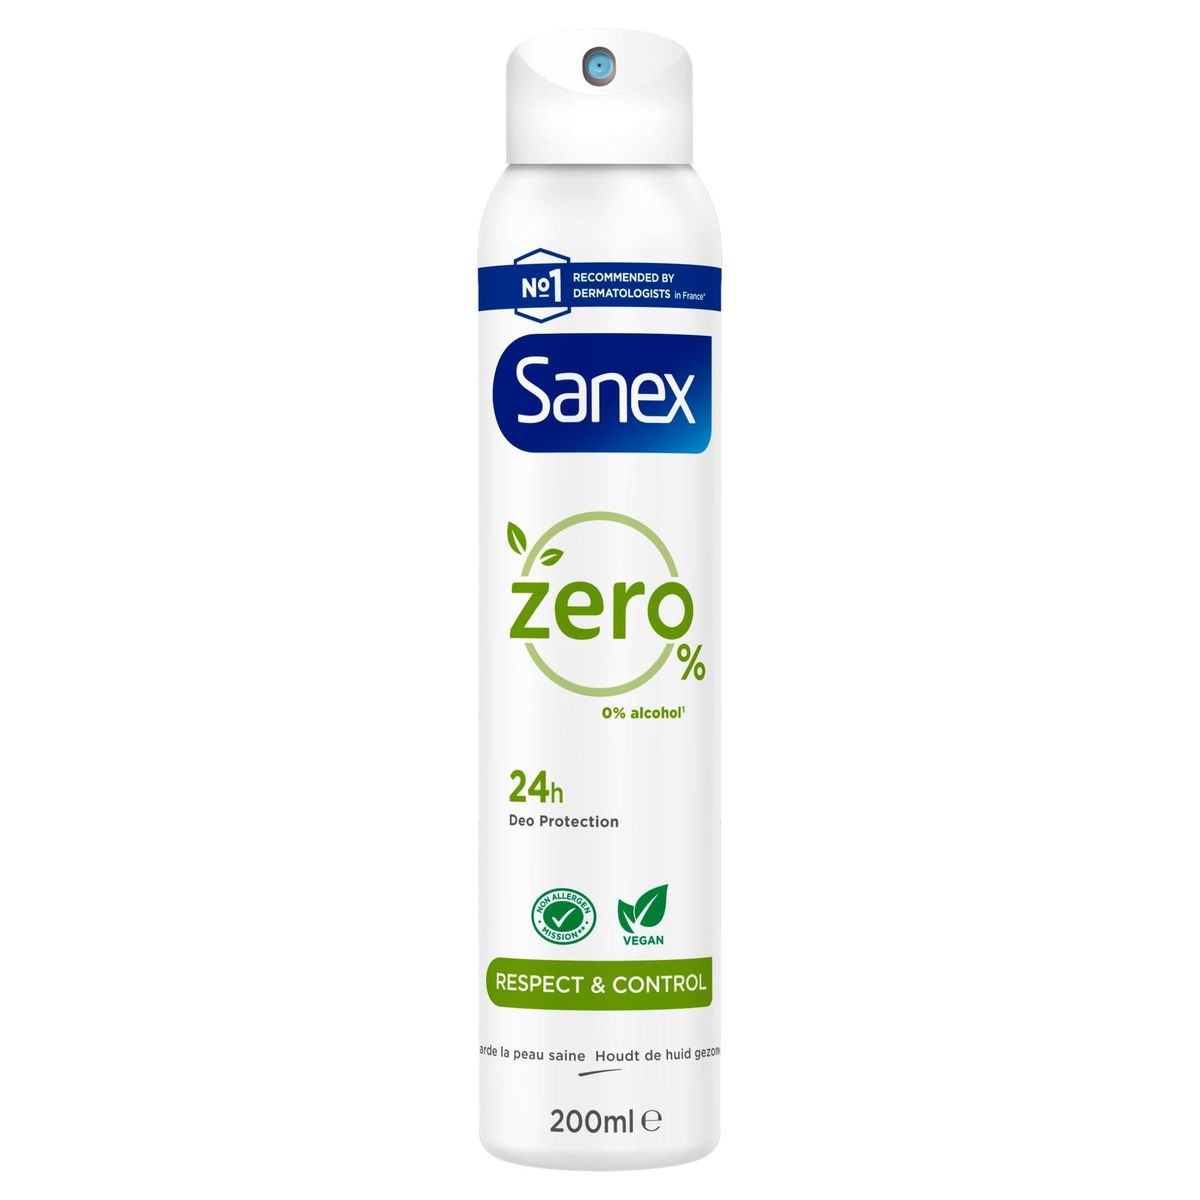 Sanex Zero% Respect & Control Deodorant Spray 200ml